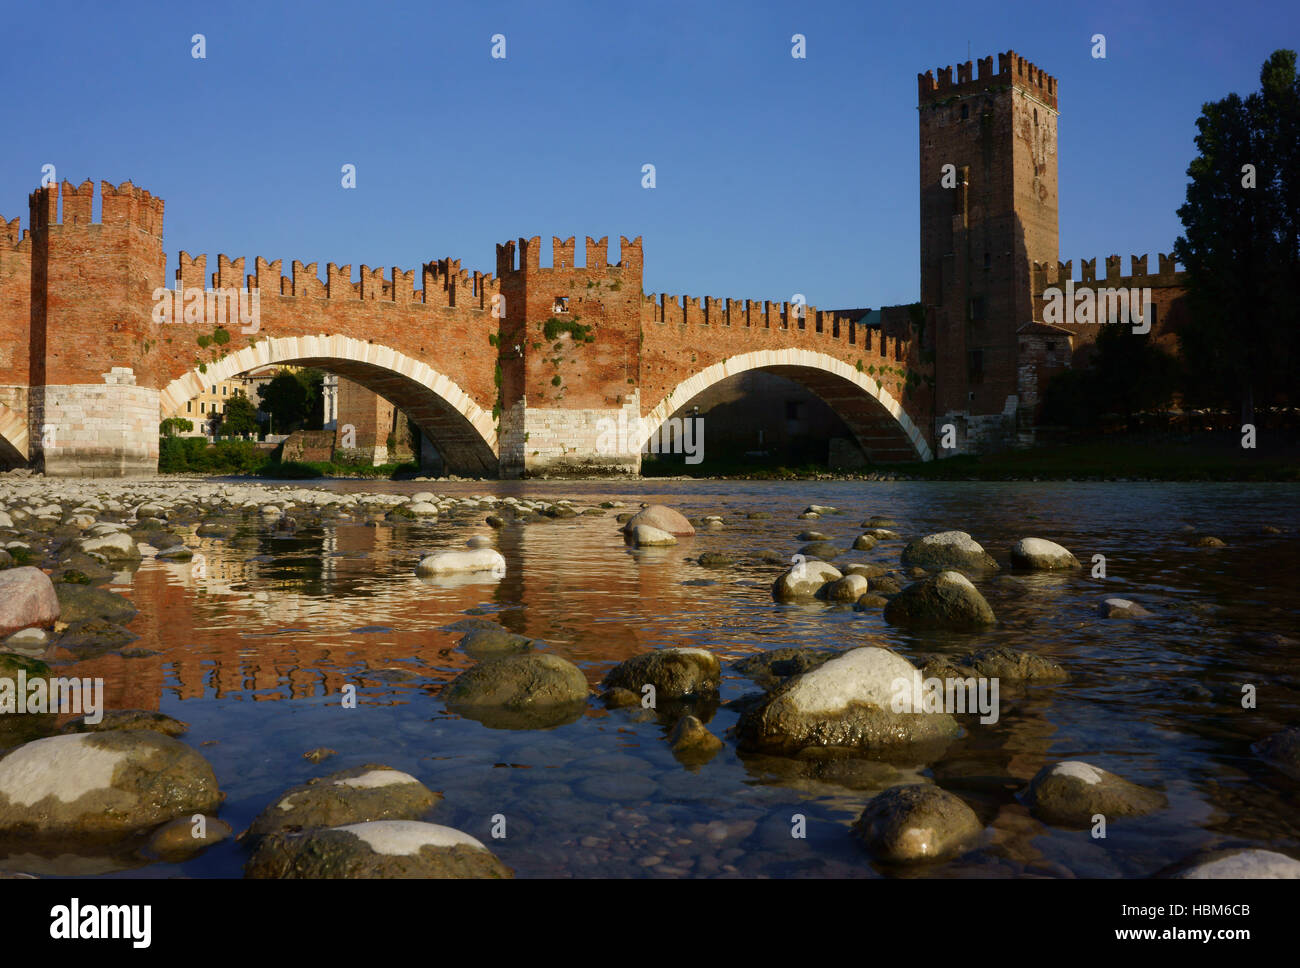 Castelvecchio et pont sur la rivière Adige, château Scaglieri, Vérone Province Vérone, Italie Banque D'Images